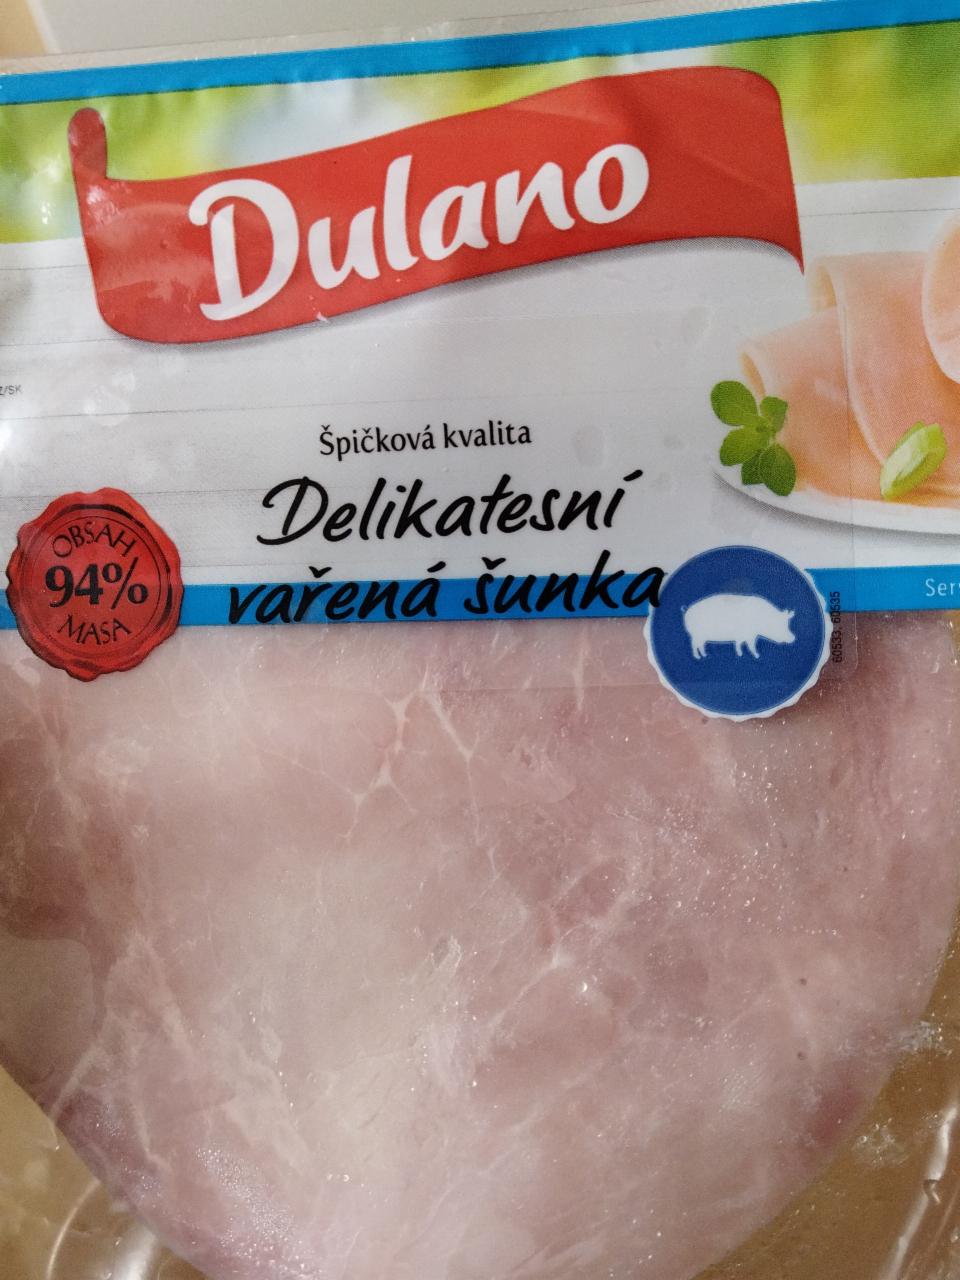 Fotografie - Dulano delikatesná varená šunka 94% mäsa